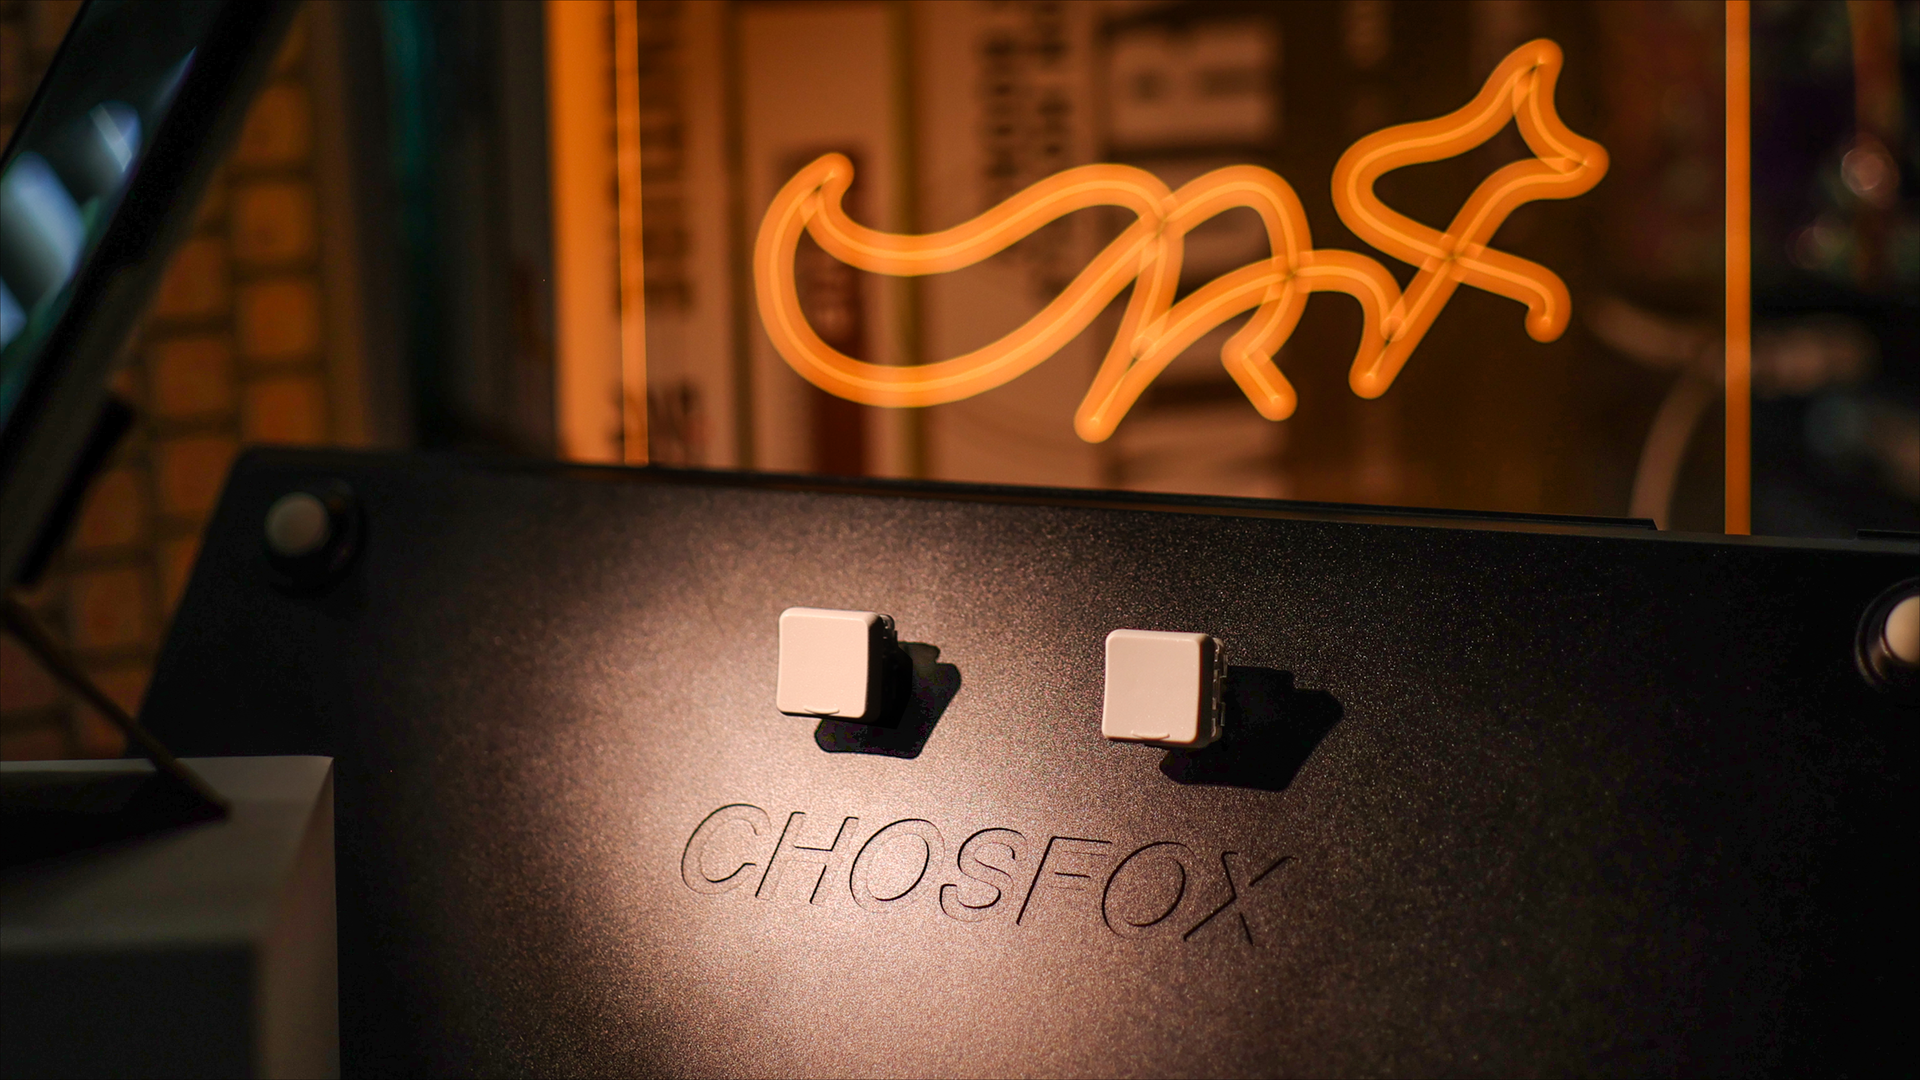 Chocfox CFX - Keycaps for Choc Switch by Chosfox-Chosfox